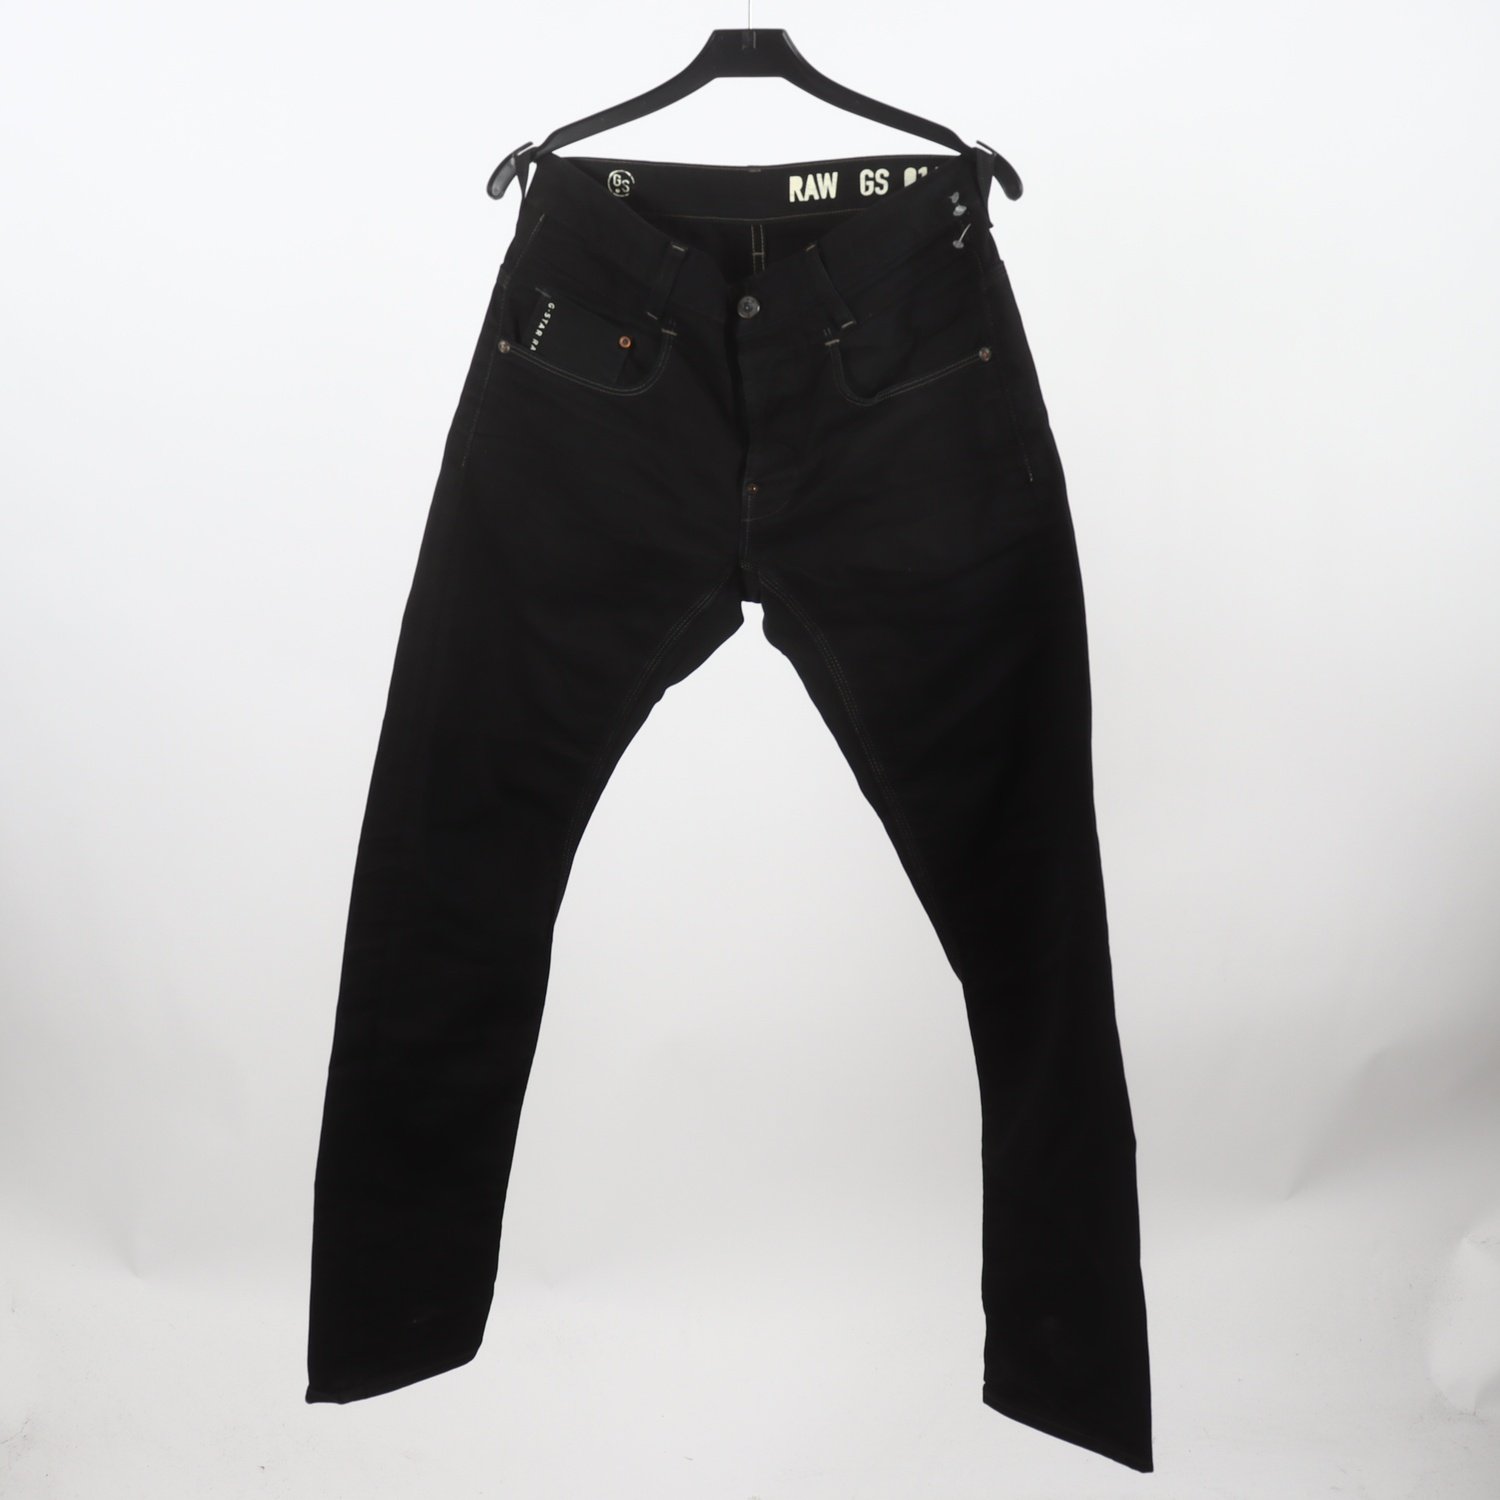 Jeans, G-star, svart, stl. W30 L32